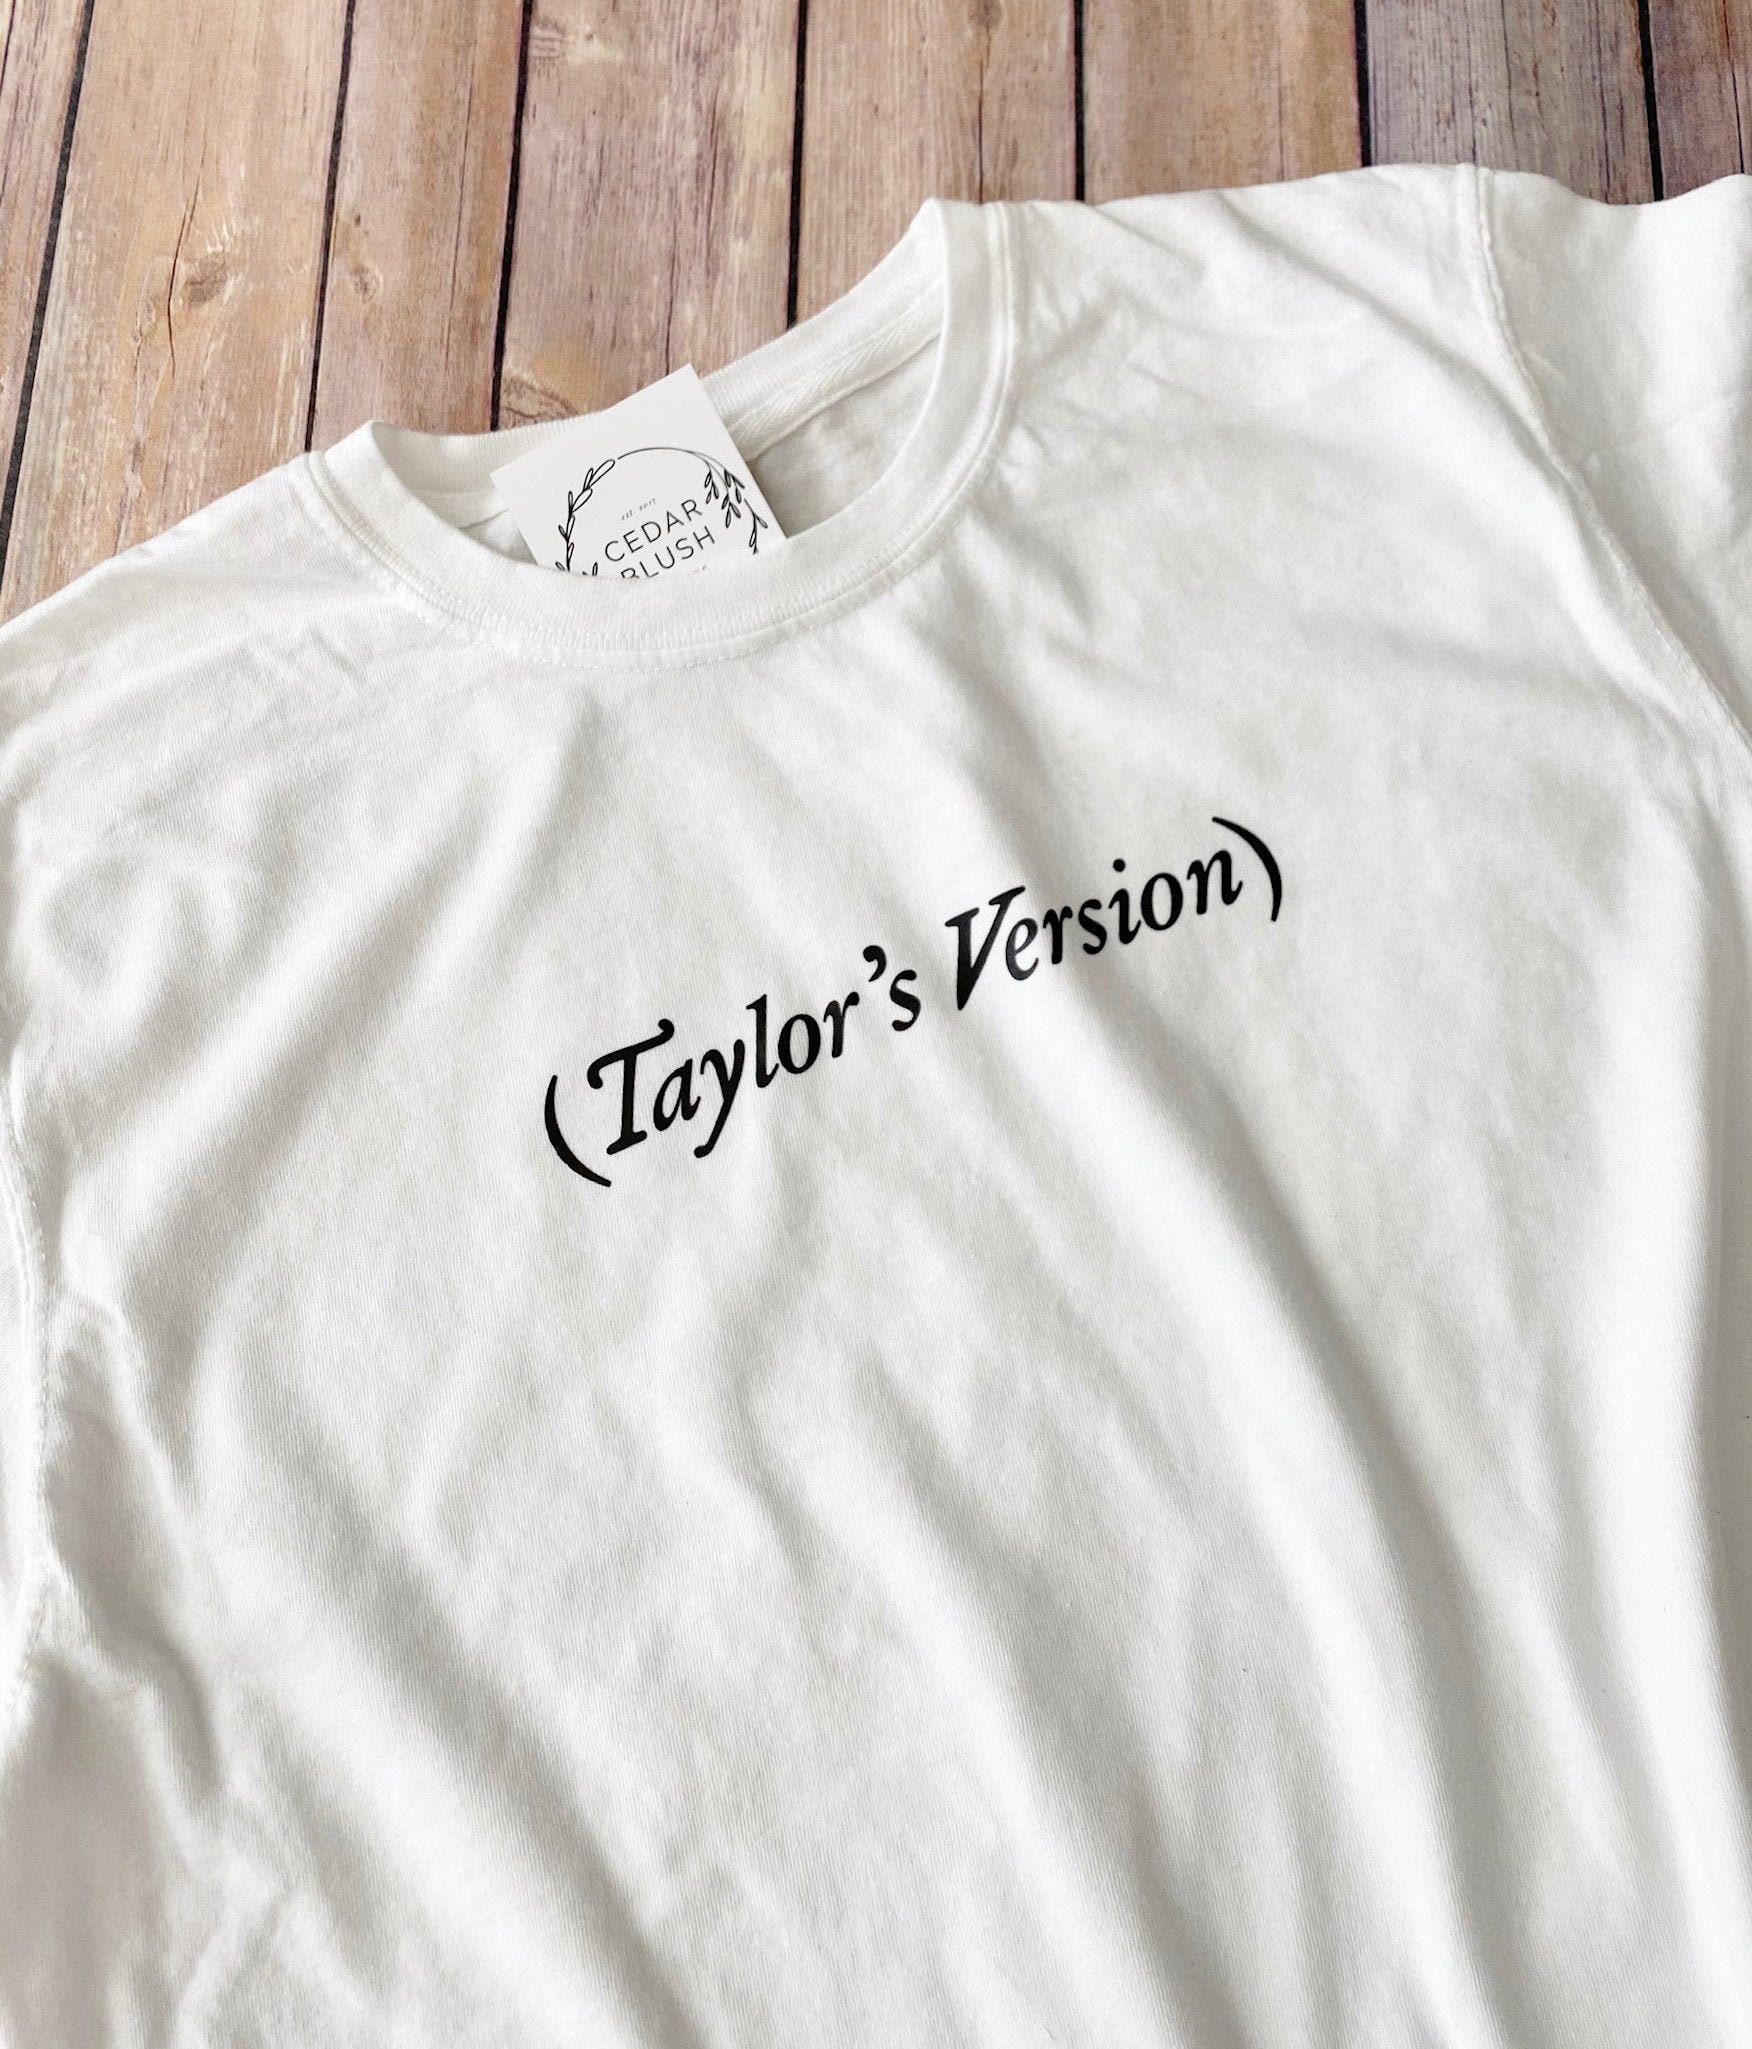 Taylors Version Shirt | Etsy